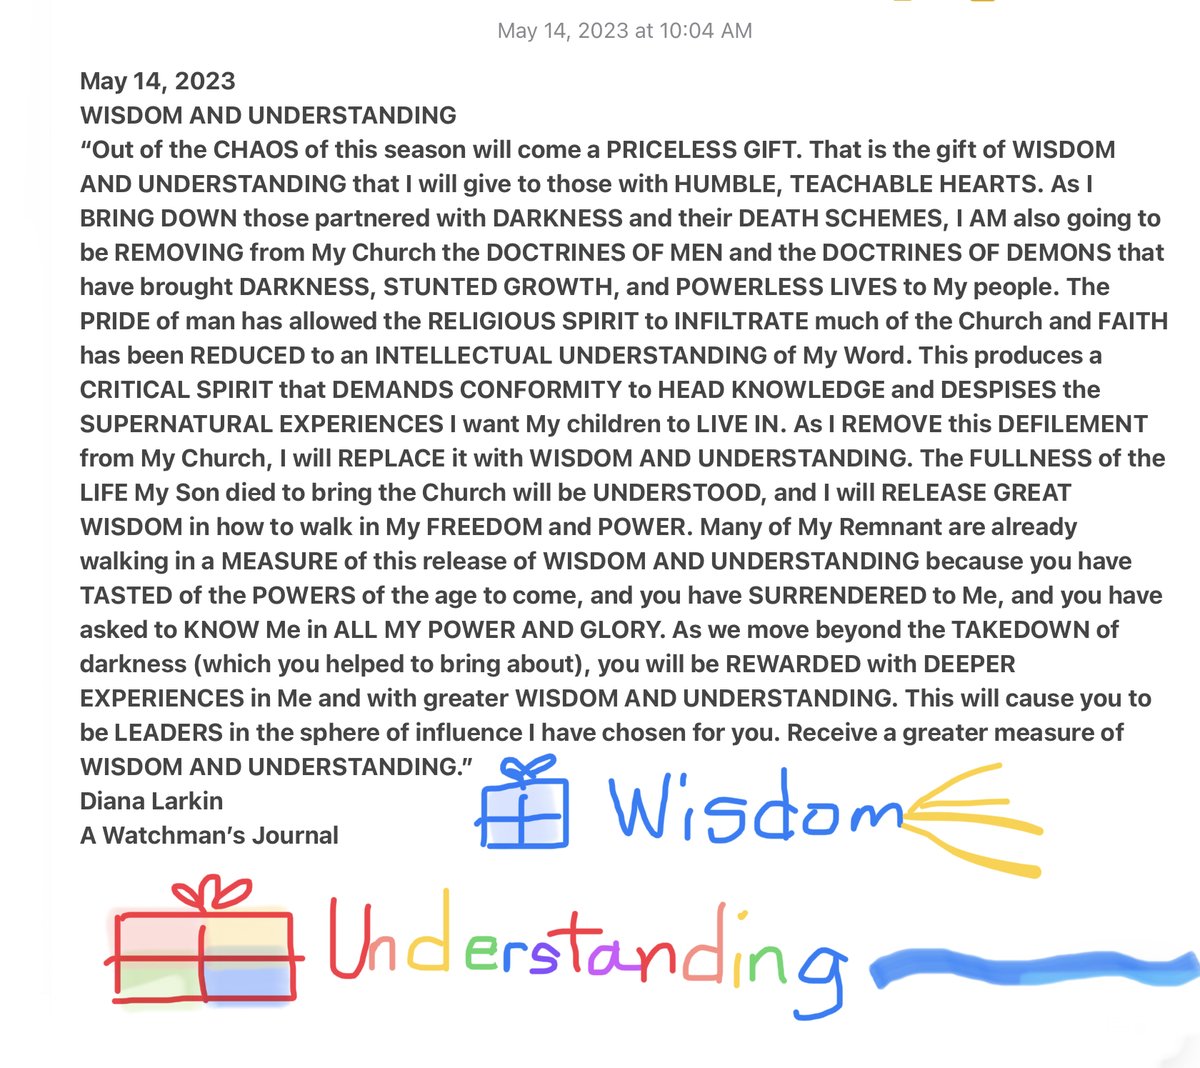 “WISDOM AND UNDERSTANDING”